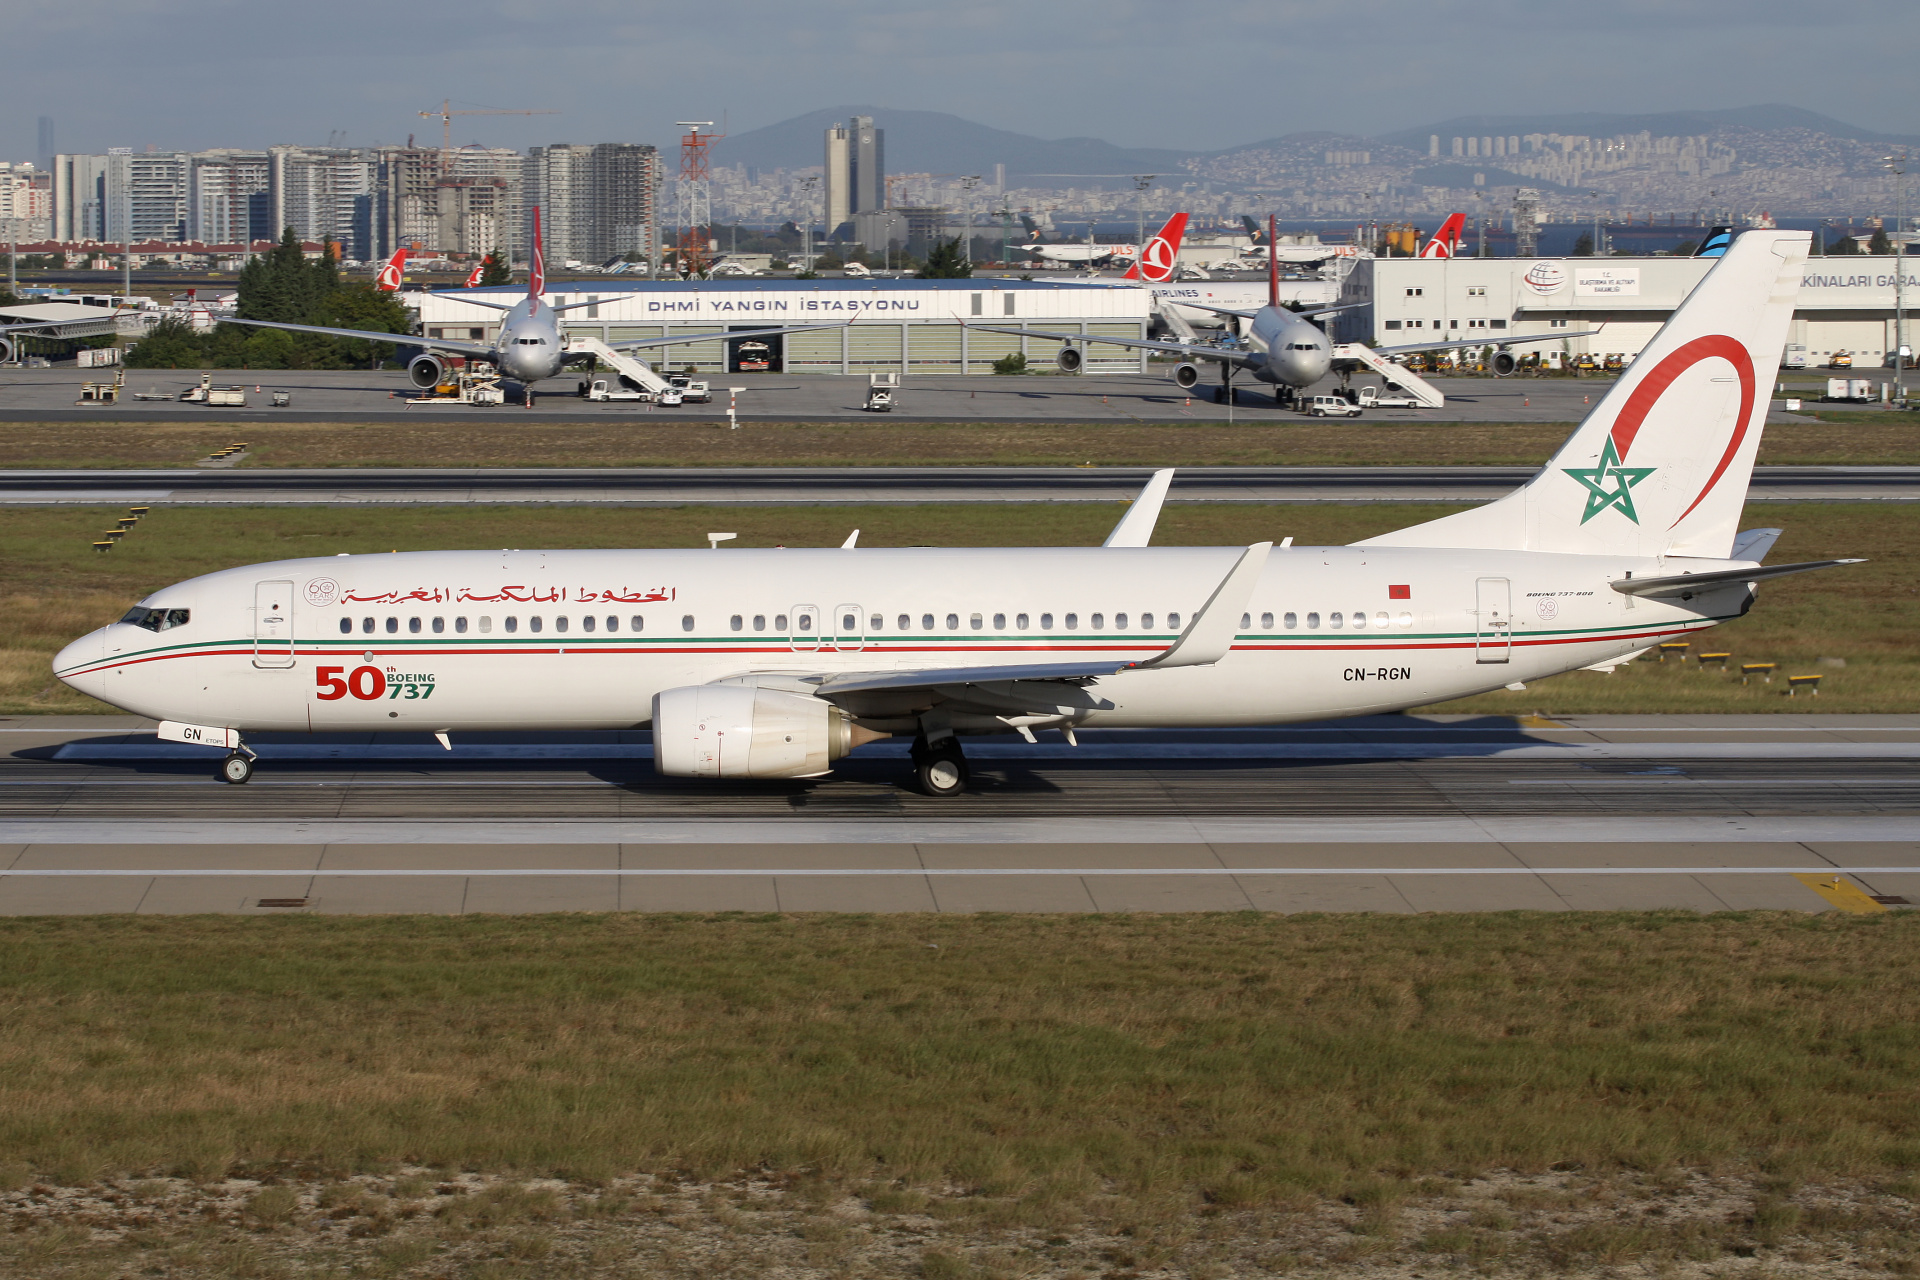 CN-RGN, Royal Air Maroc (malowanie 50-ty Boeing 737, sticker 60. rocznicy) (Samoloty » Port Lotniczy im. Atatürka w Stambule » Boeing 737-800)